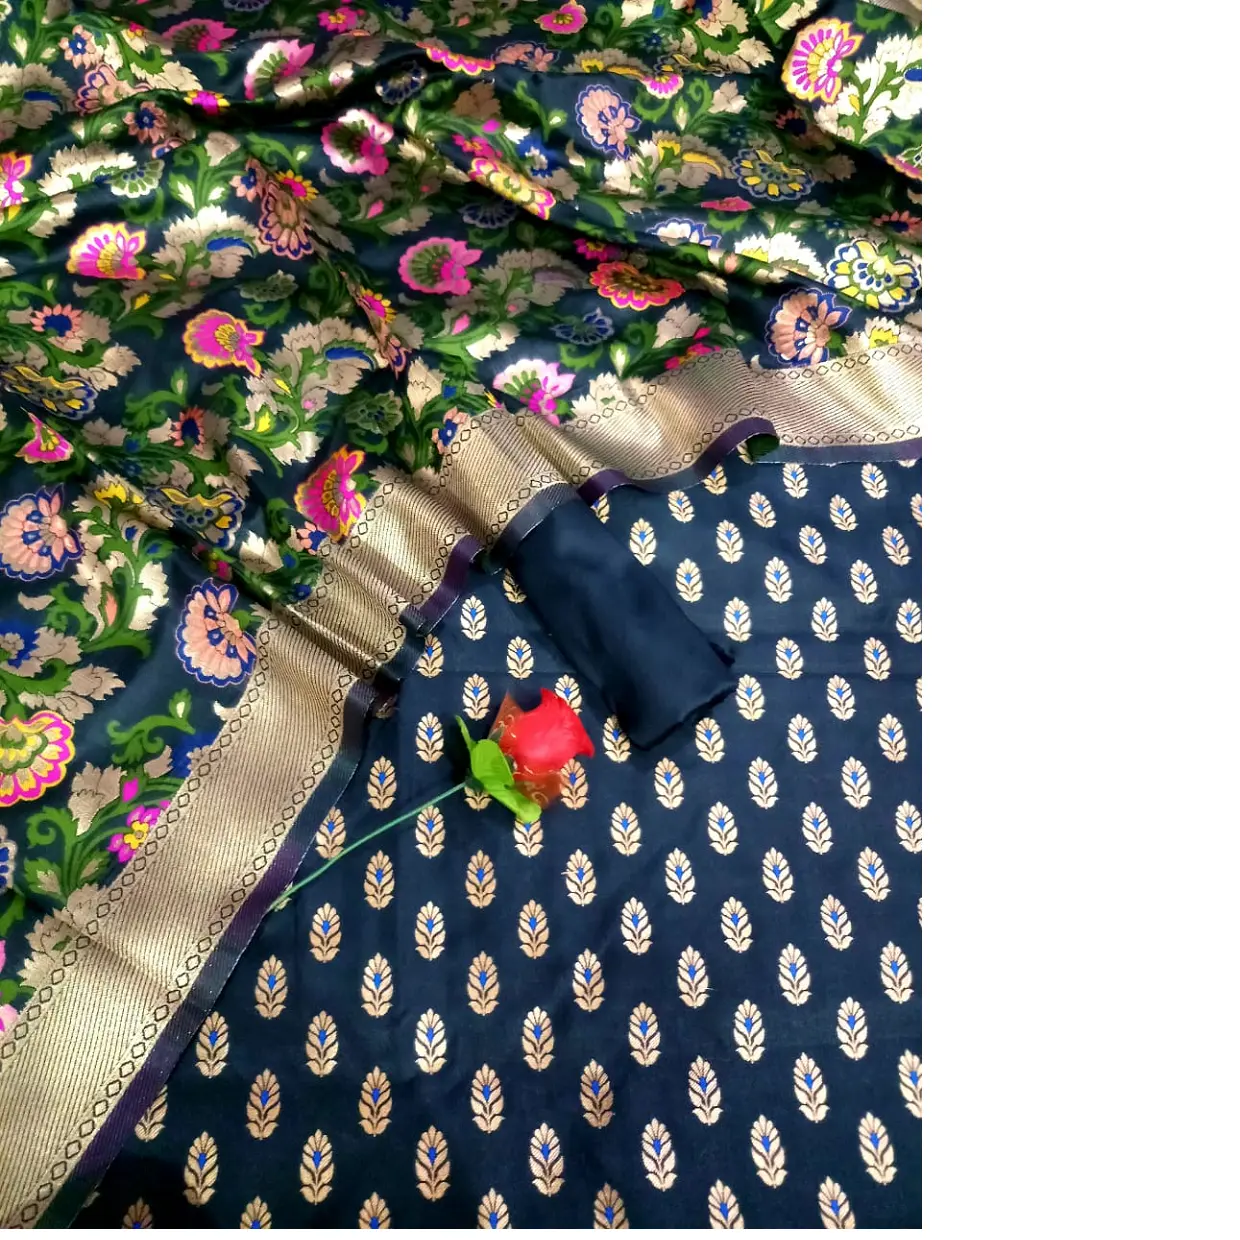 Sarees de seda brocado personalizado na cor azul com bordado floral ideal para lojas de roupas indianas para revenda